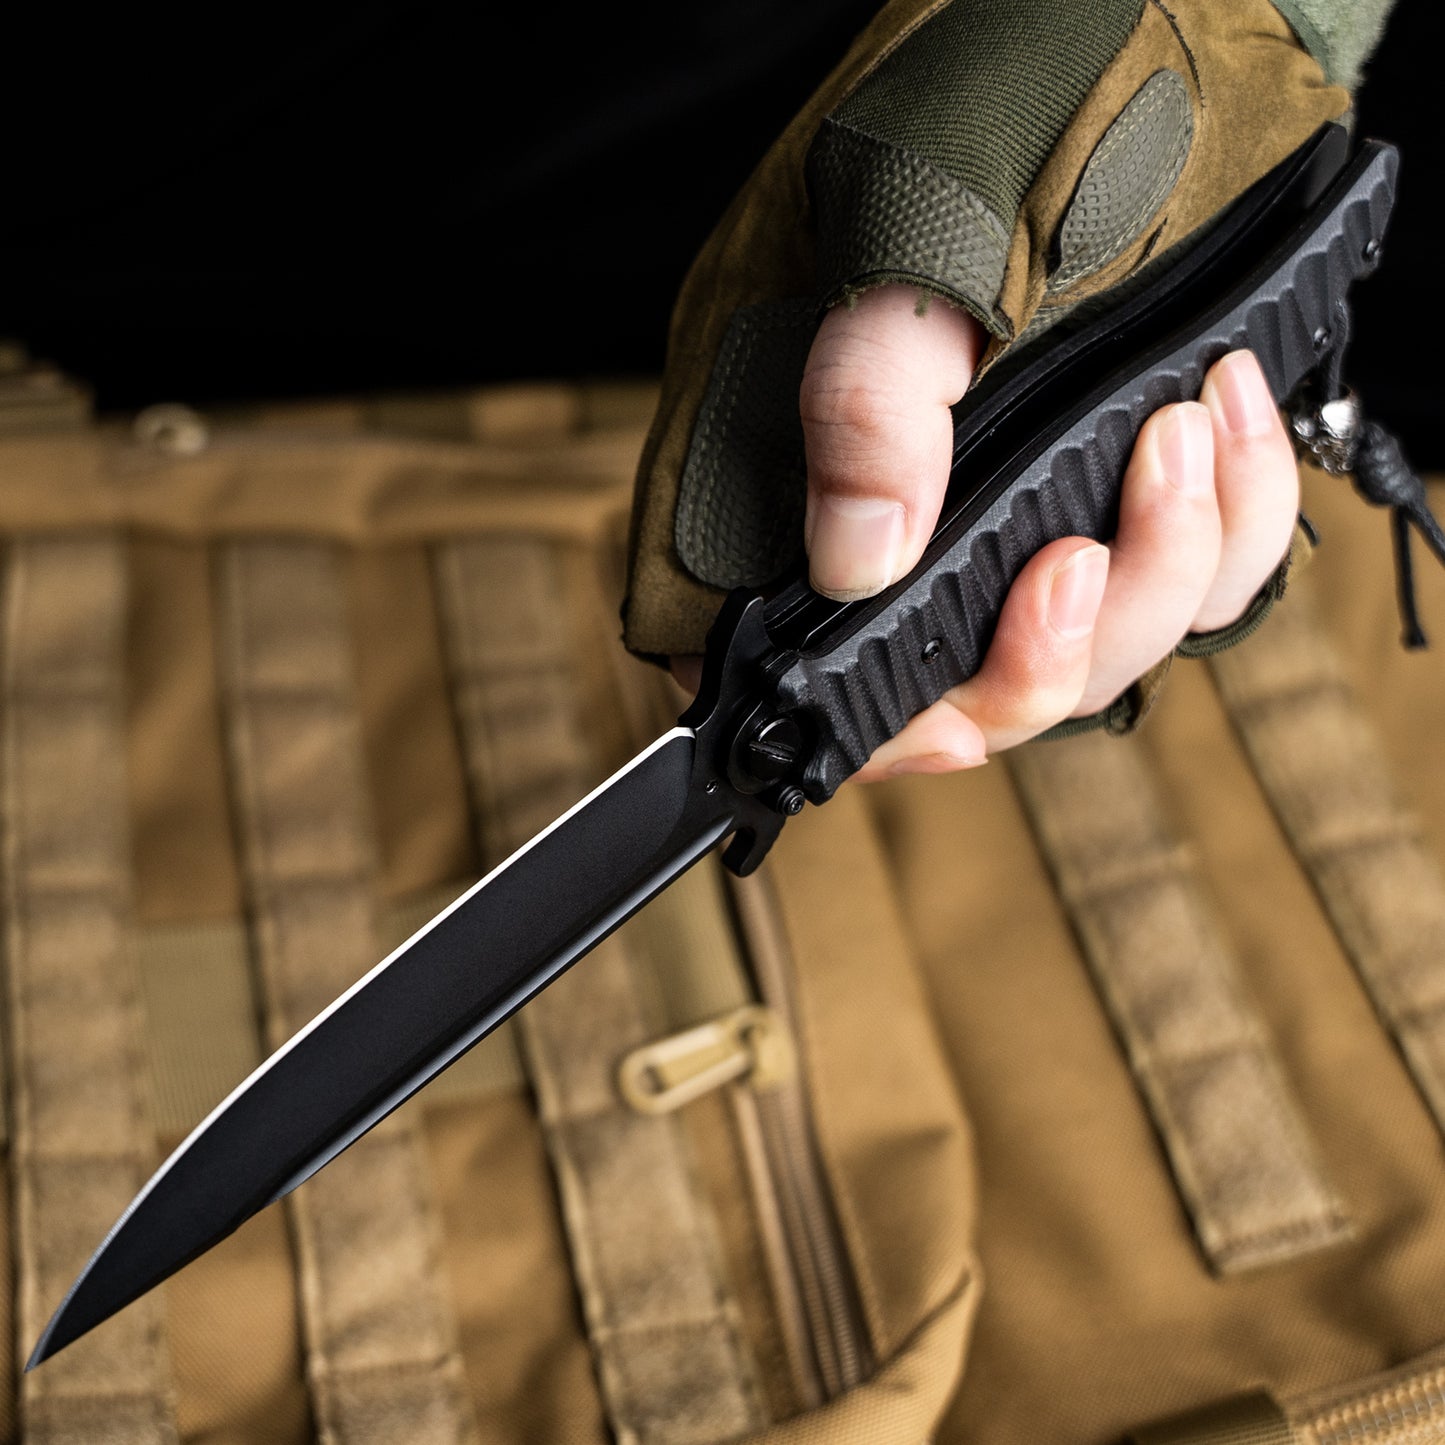 LOTHAR PHOENIX Large Pocket Knife, 5‘’ D2 Steel Blade Hunting Folding Knife, Black G10 Handle, Huge Tactical Pocket Knife, Flipper Assisted Opening